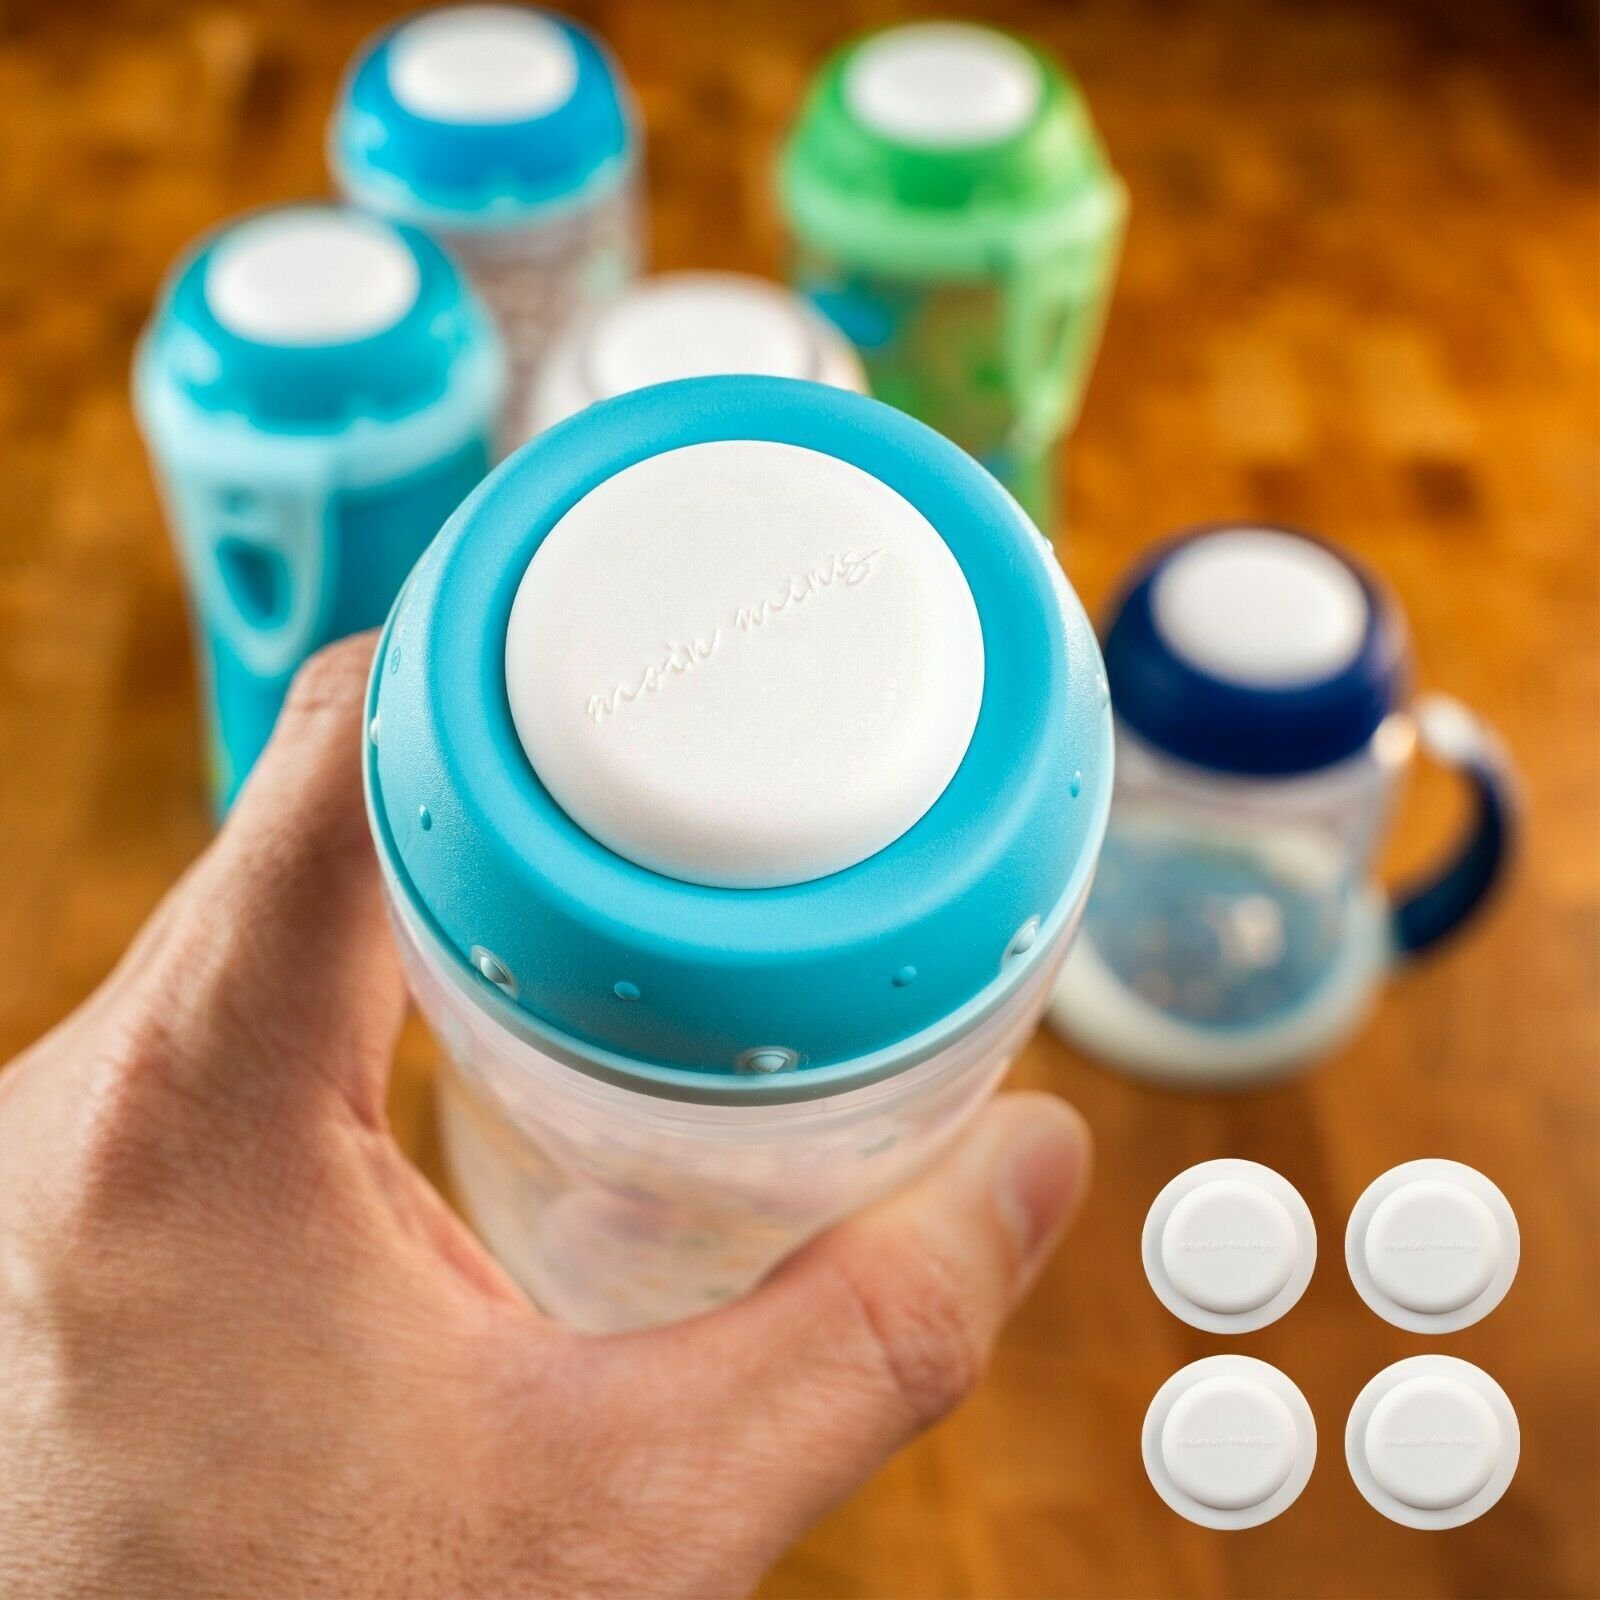 moin / NUK-Flaschen Plättchen Verschluss-Deckel minis Babyflasche 4er moin minis Set für